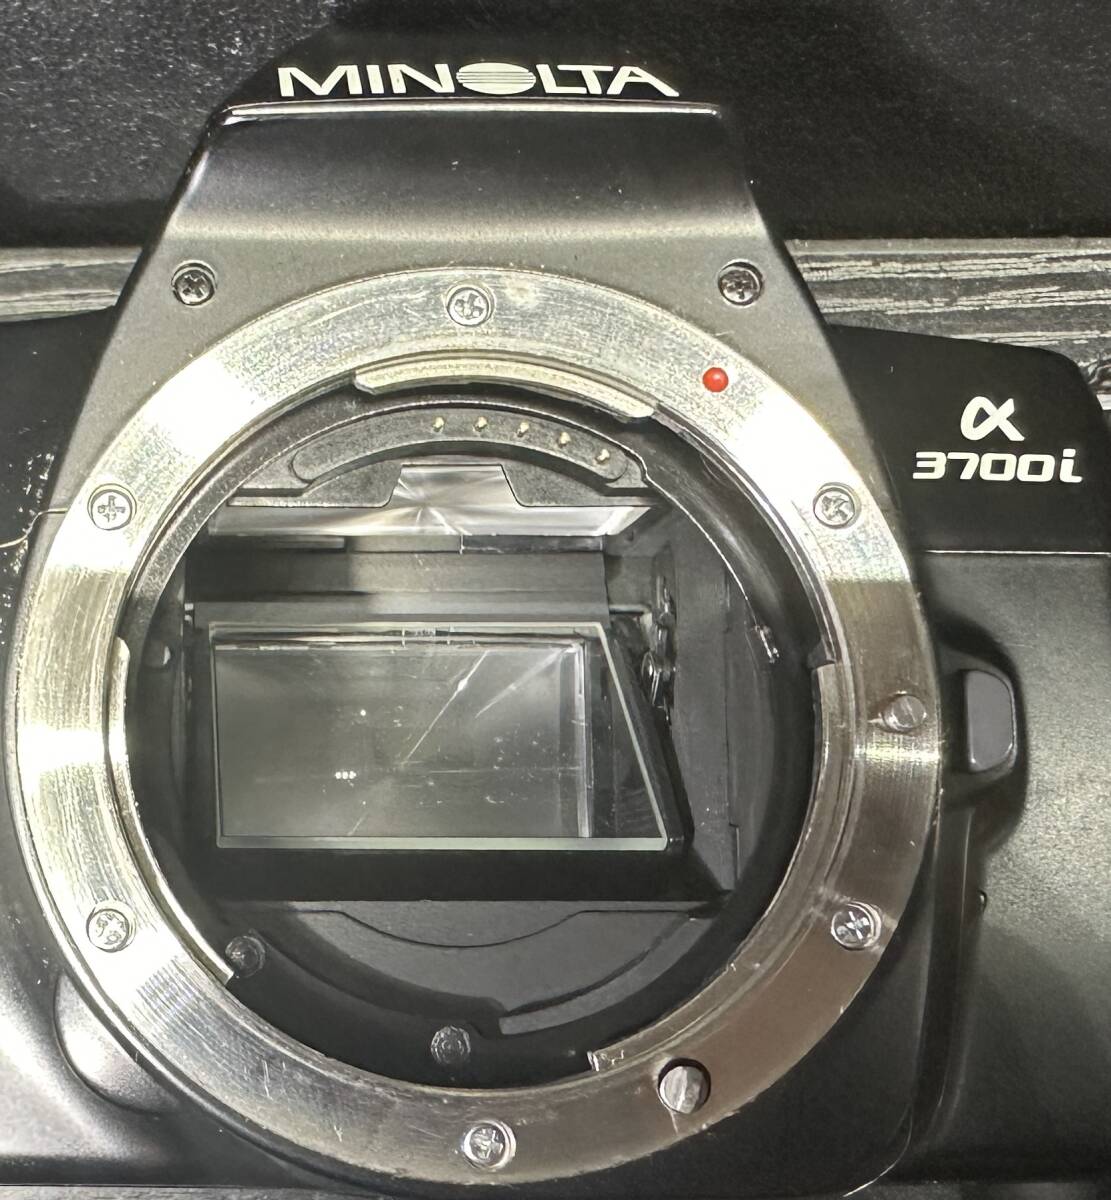 MINOLTA α 3700i /AF ZOOM 35-105mm 1:3.5-4.5 ミノルタ フィルムカメラ #2192